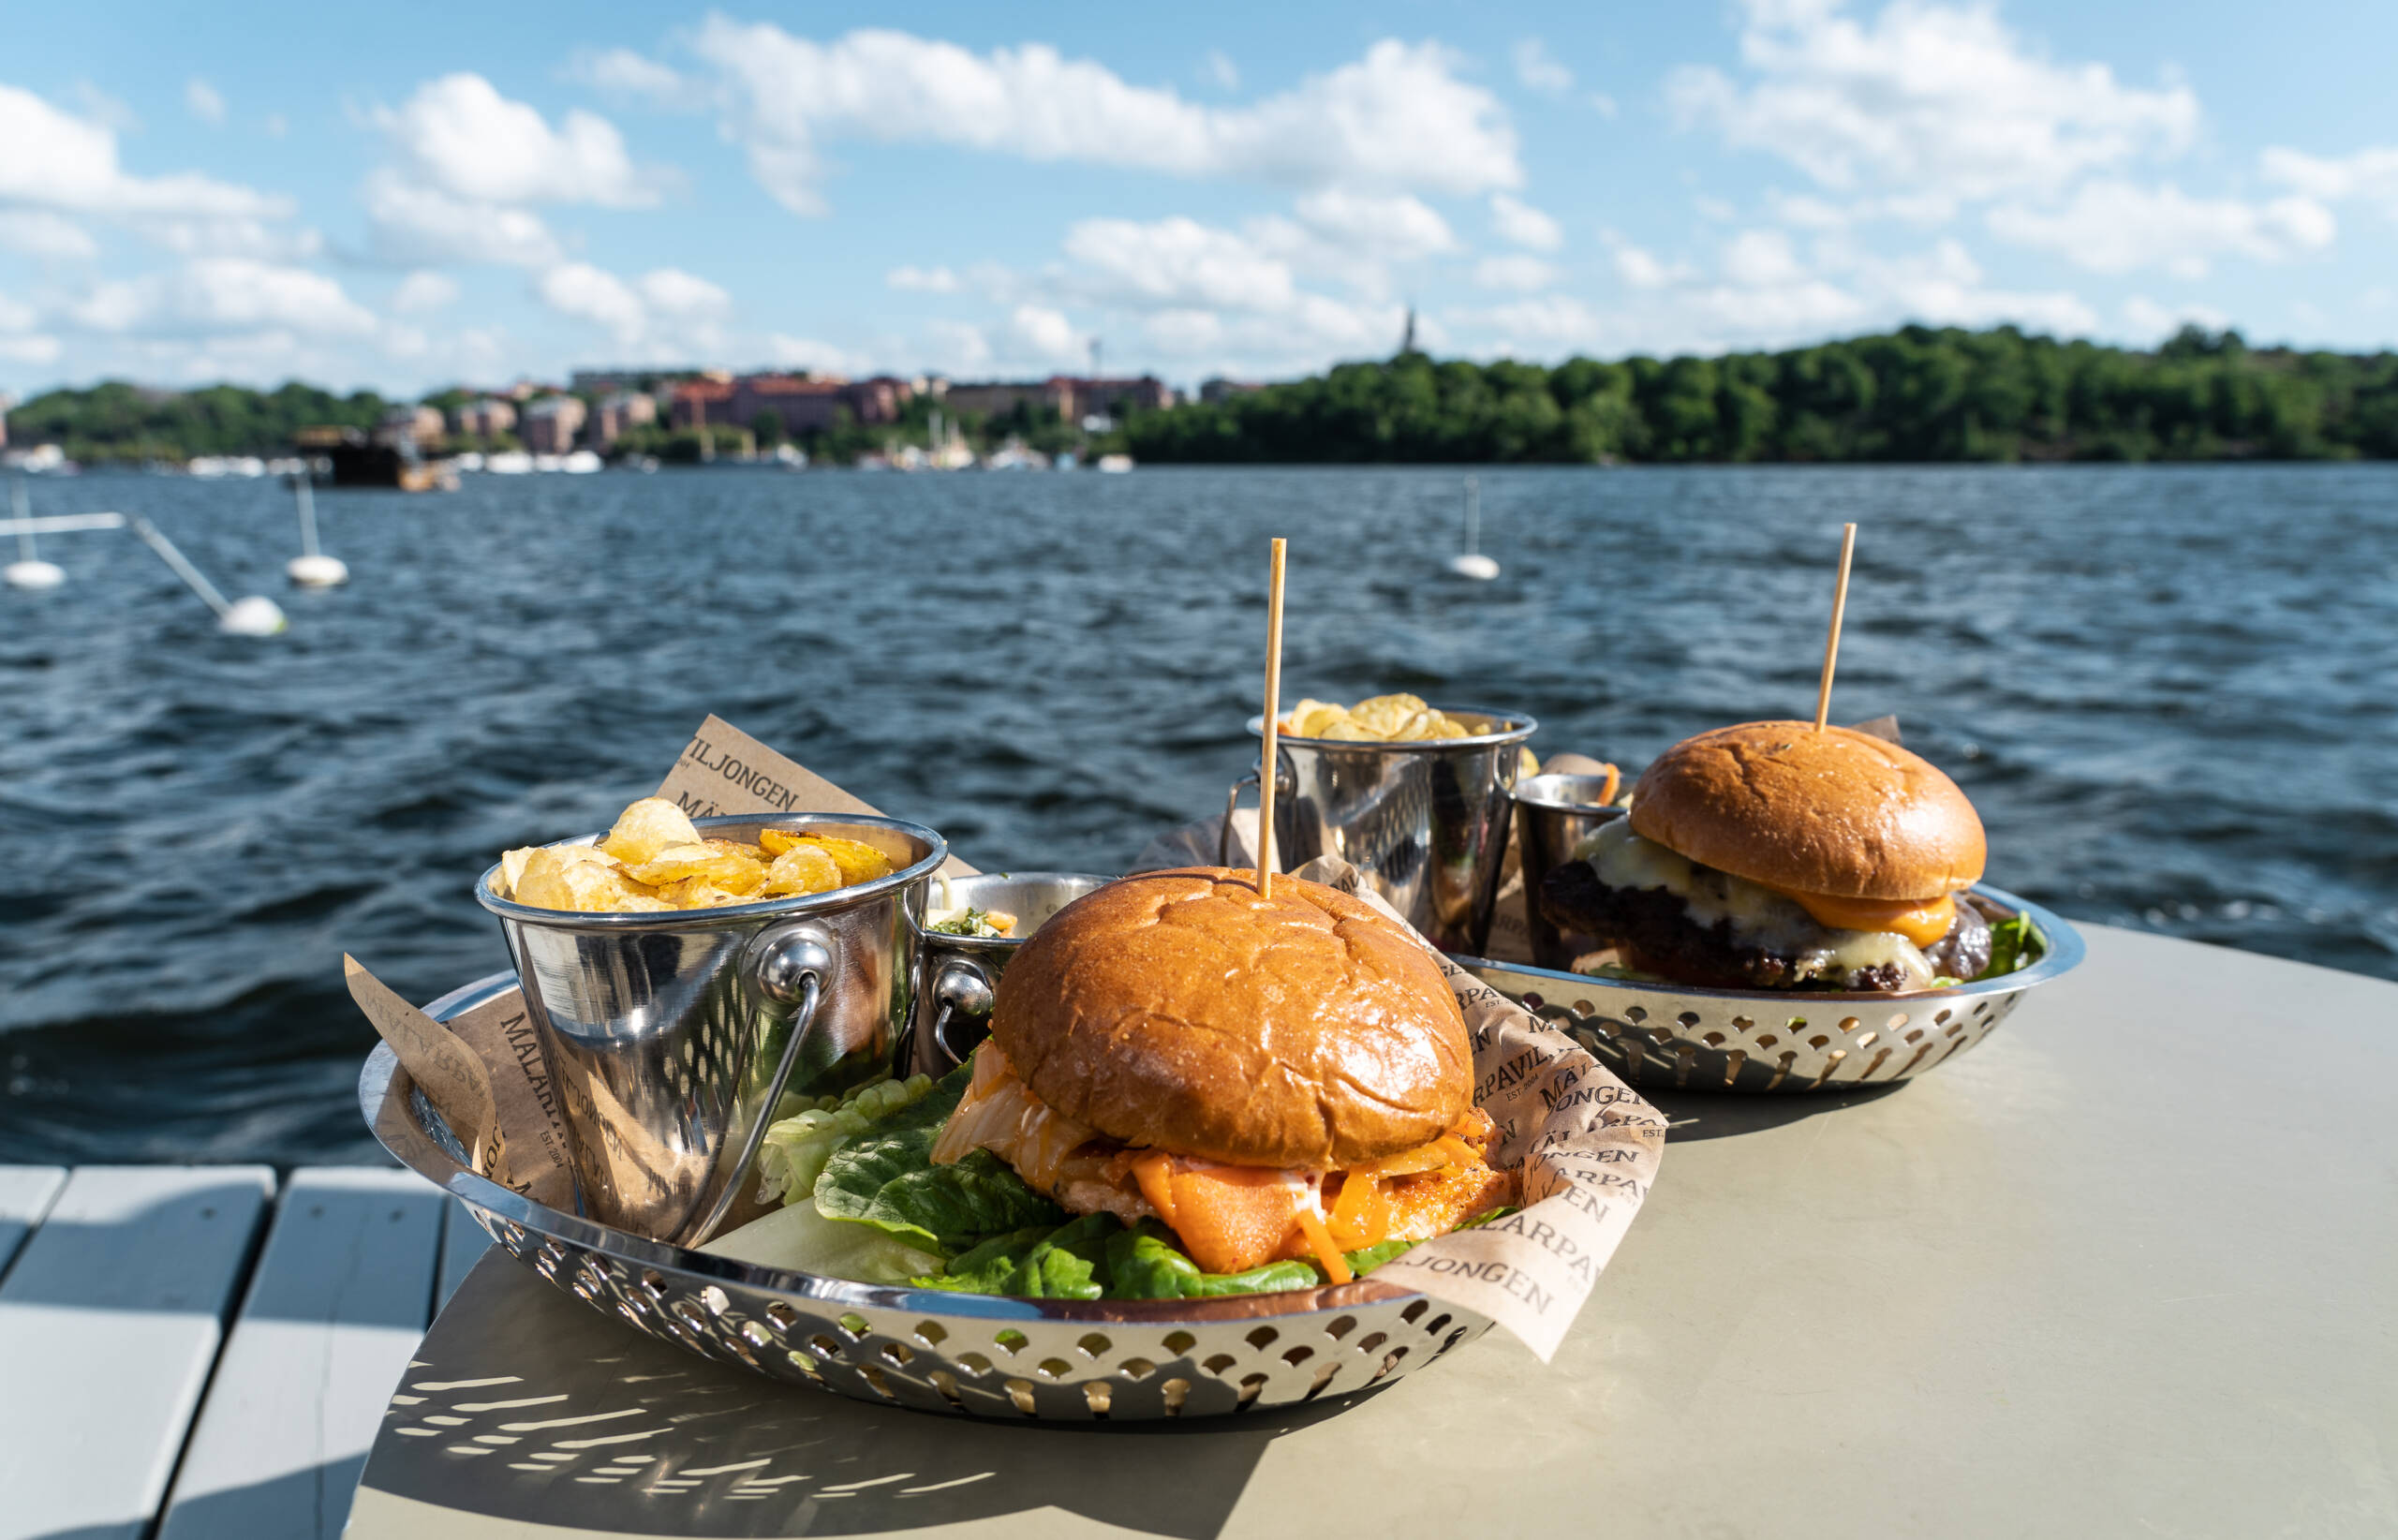 Zum Mittagessen darf es in der schwedischen Küche auch schon mal einen leckeren Burger am Wasser geben.